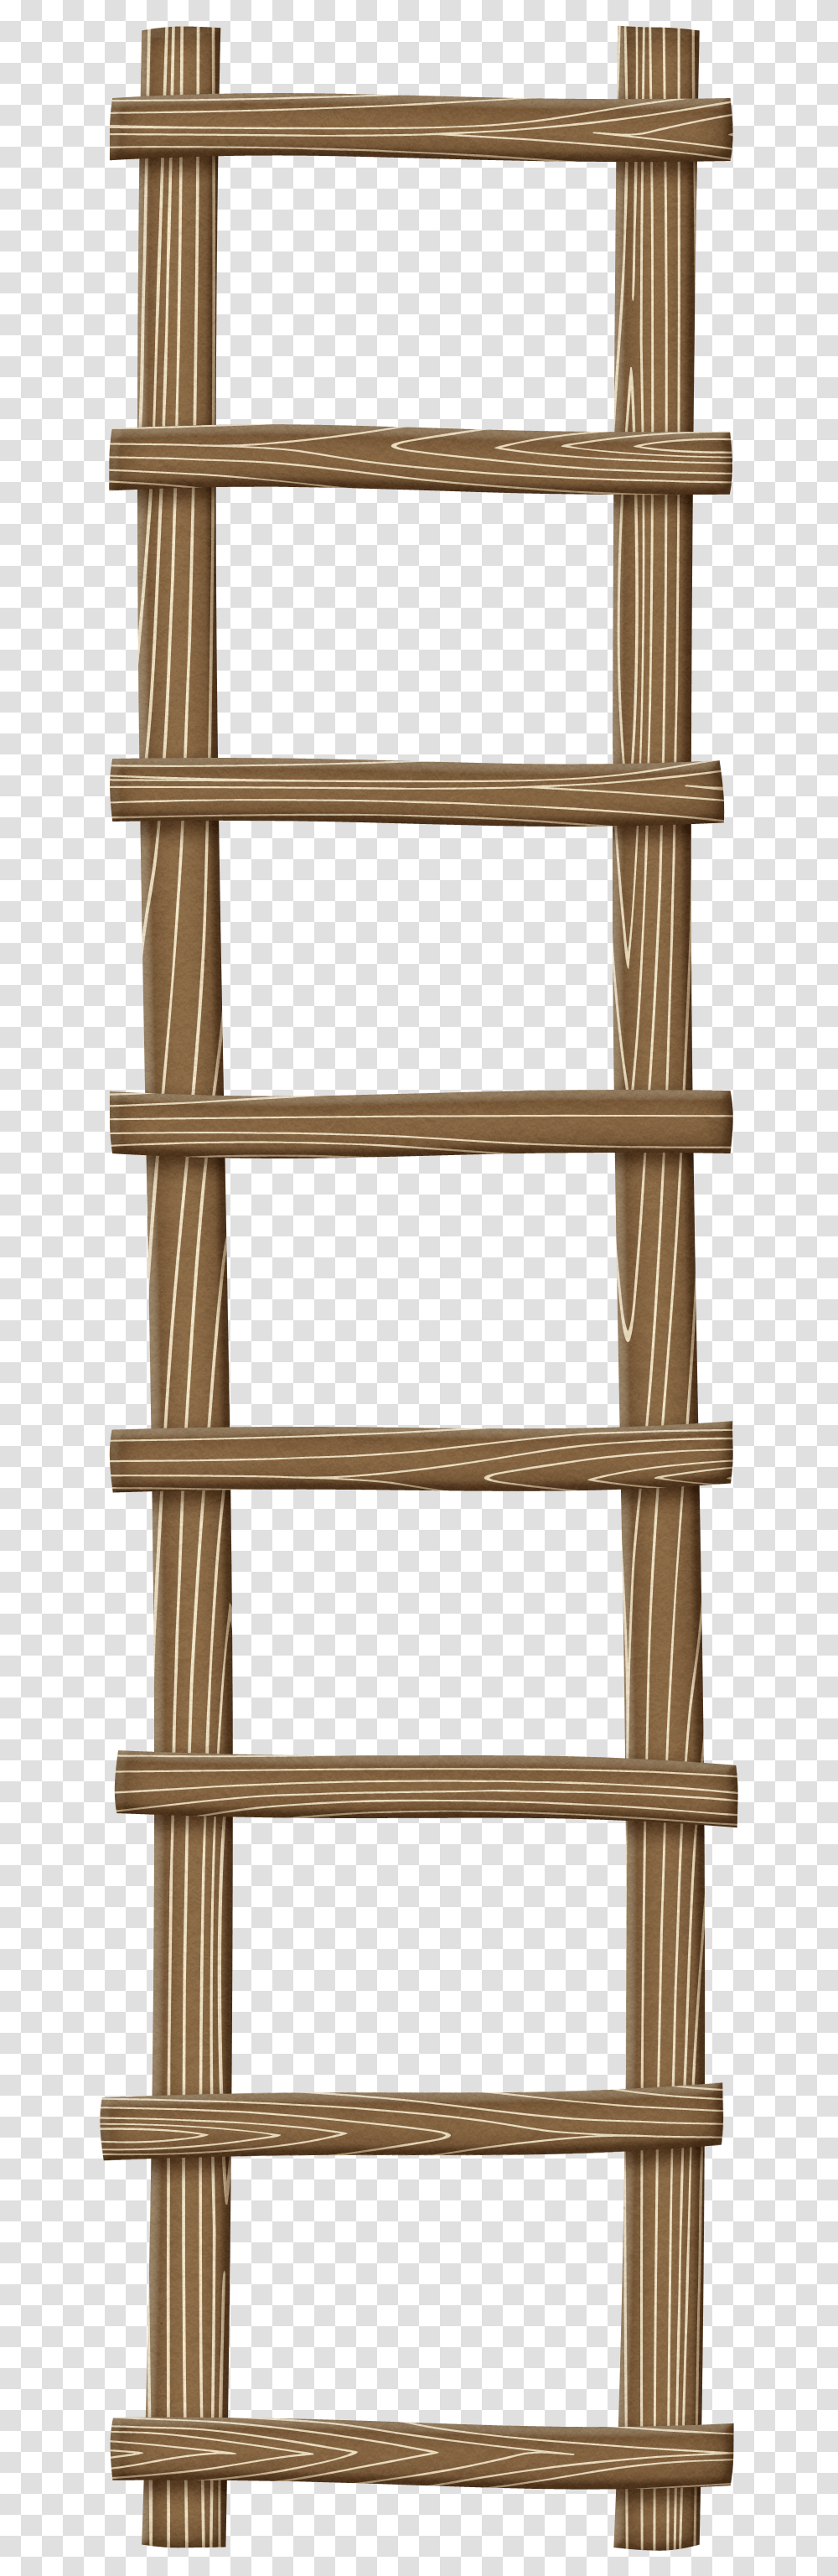 Ladder, Tool, Shelf, Wood, Furniture Transparent Png